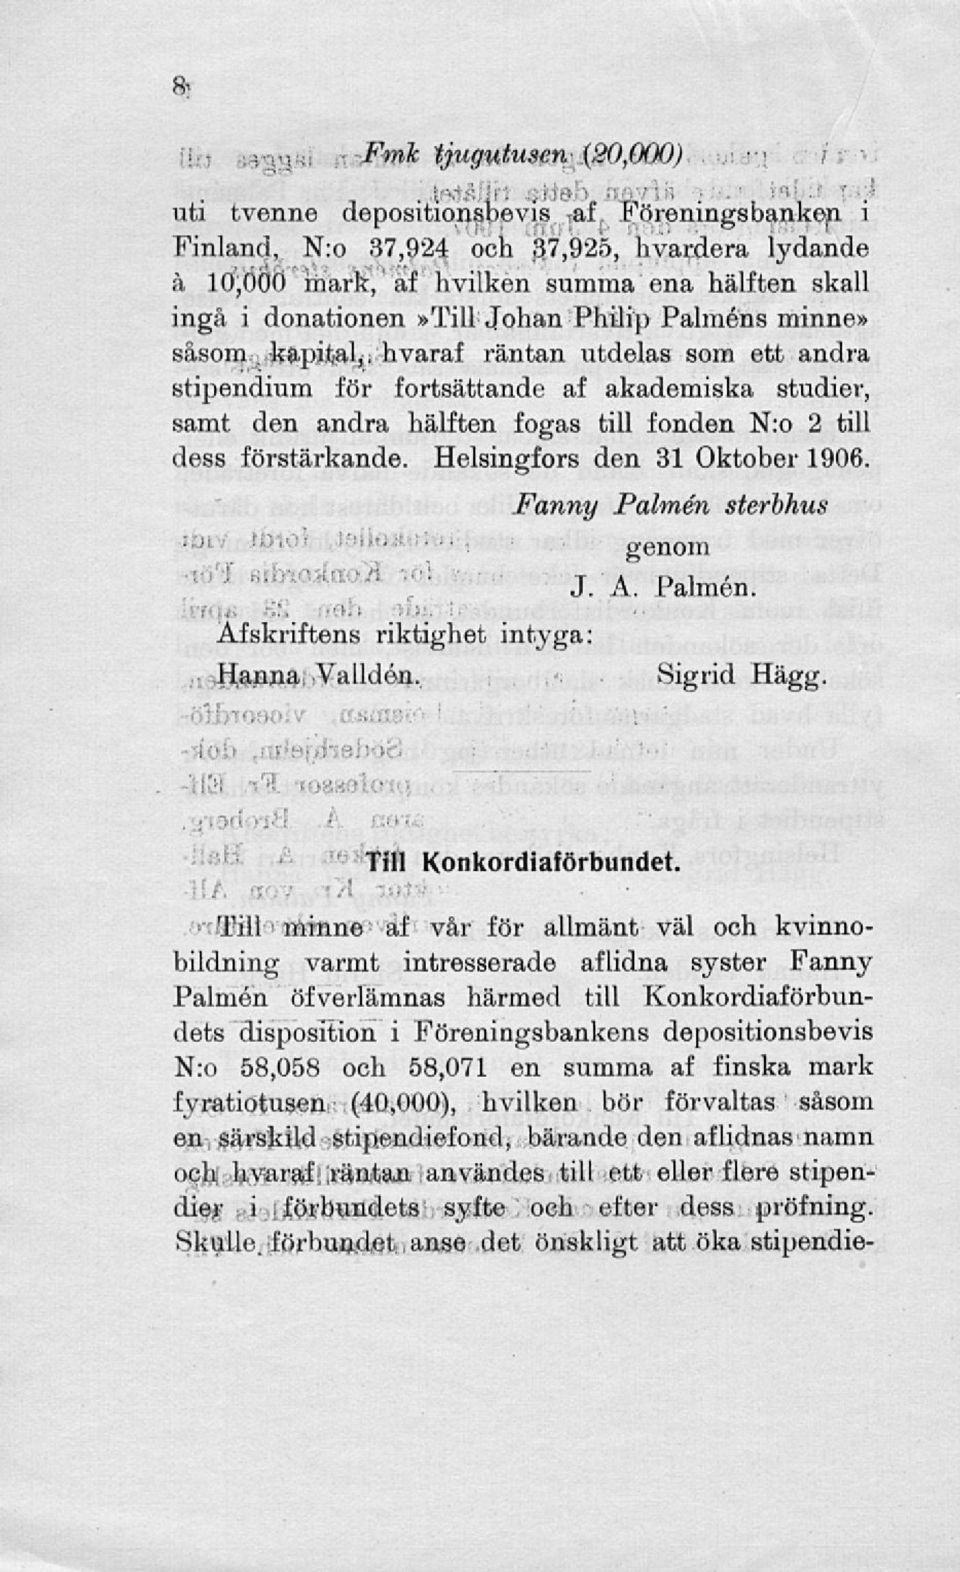 förstärkande. Helsingfors den 31 Oktober 1906. Afskriftens riktighet intyga: Hanna Validén, Fanny Palmen sterbhus genom J. A. Palmen. Sigrid Hägg. Till Konkordiaförbundet.